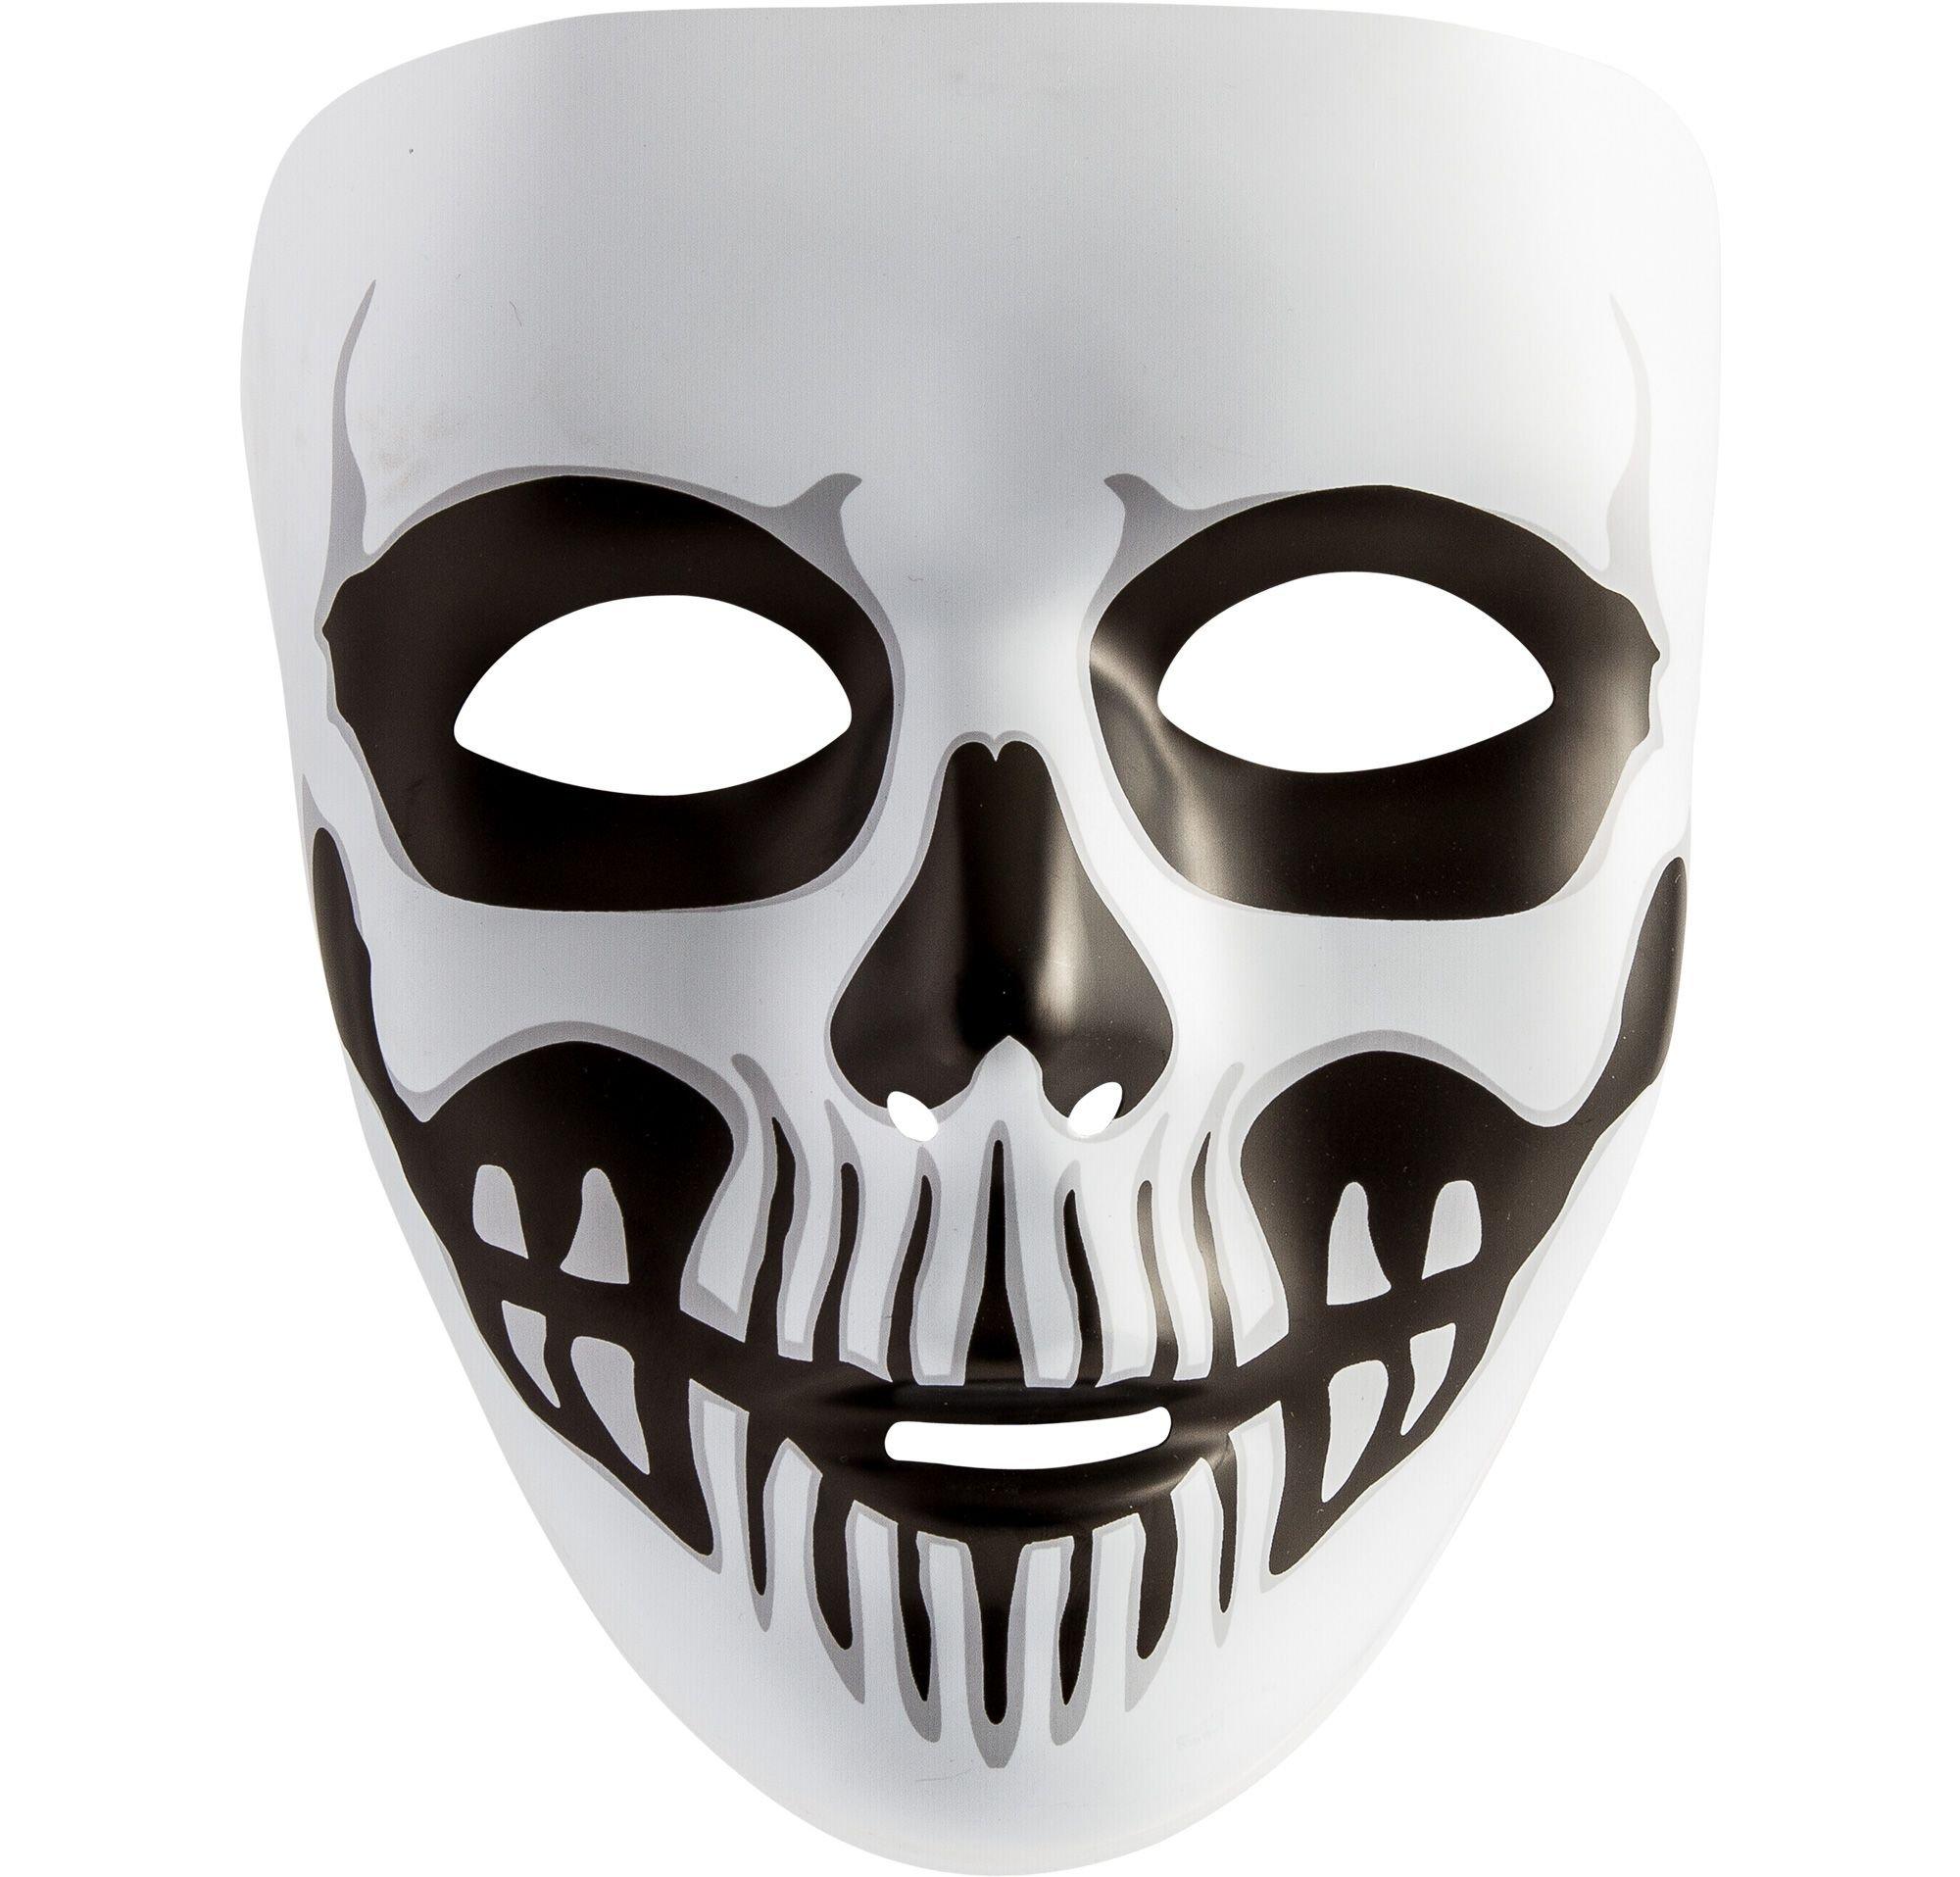 scary white mask